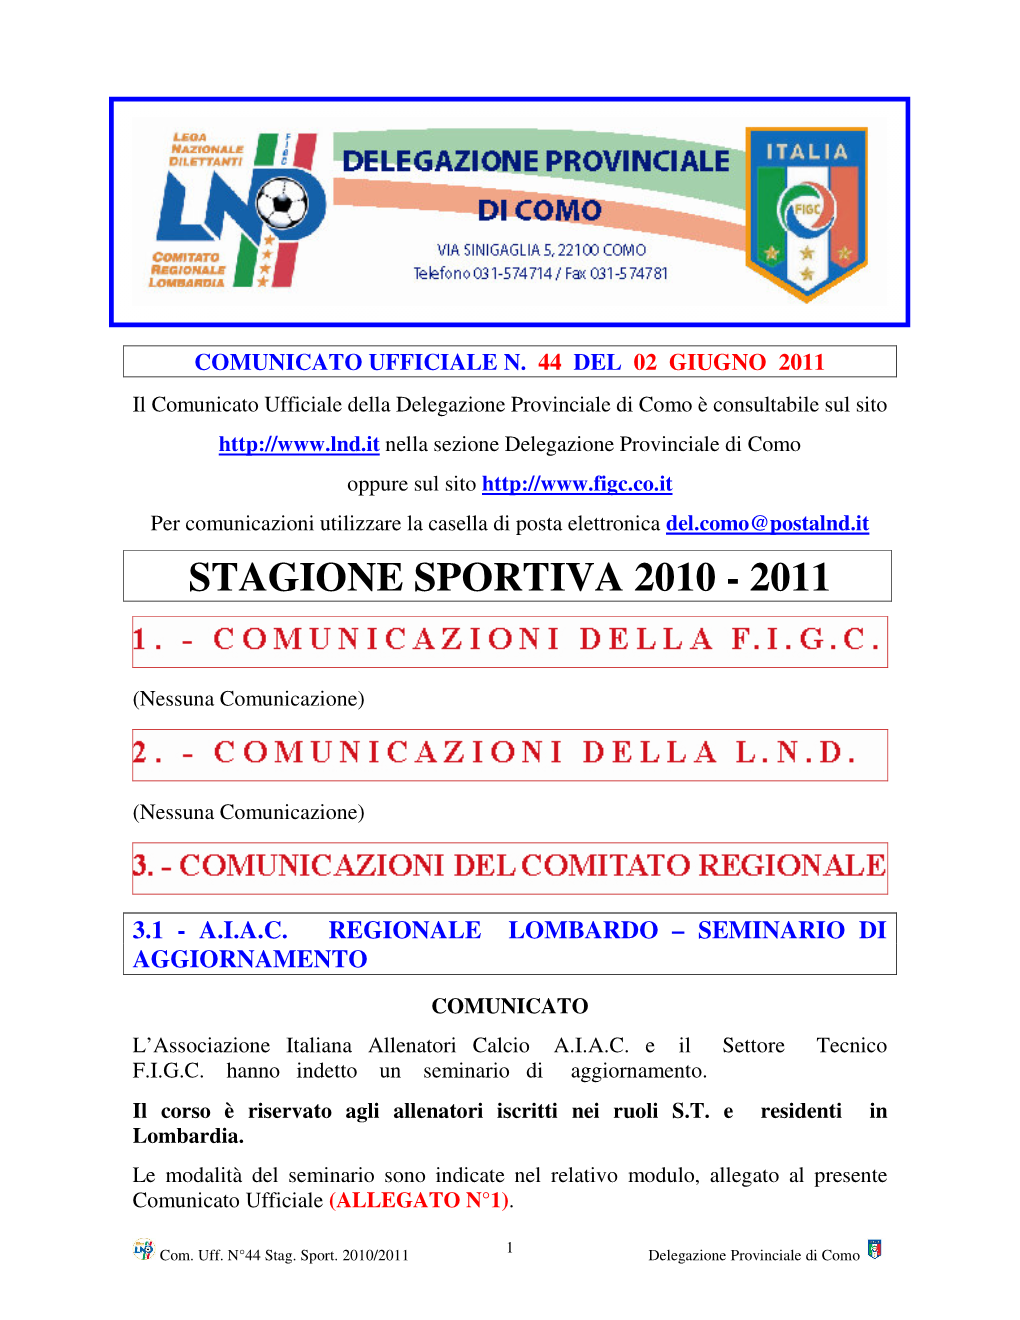 Stagione Sportiva 2010 - 2011